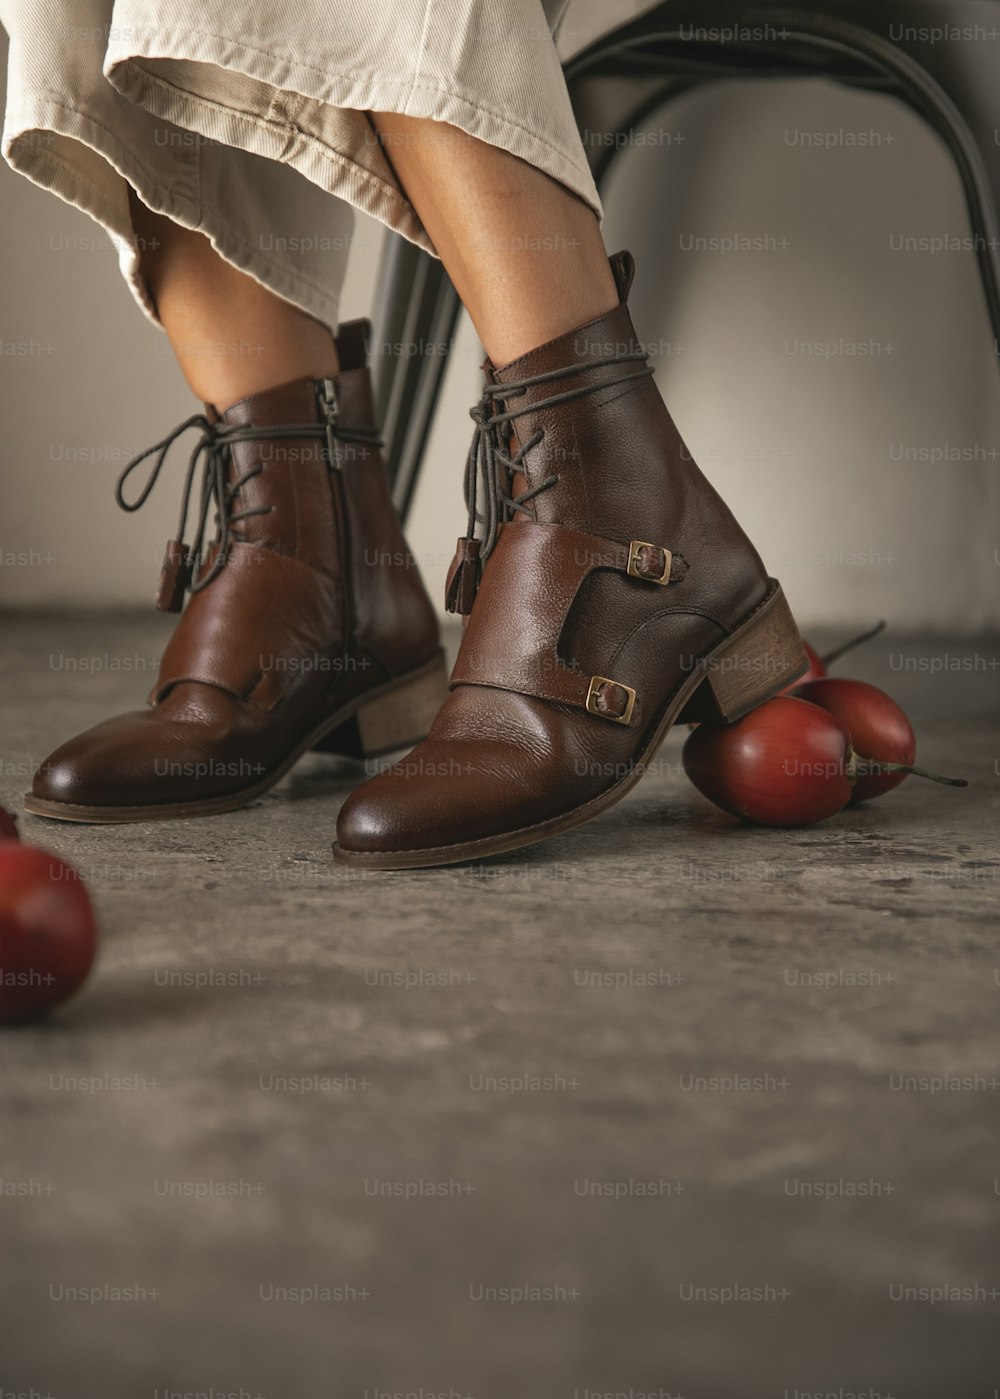 Die Beine einer Frau mit braunen Schuhen und Äpfeln auf dem Boden